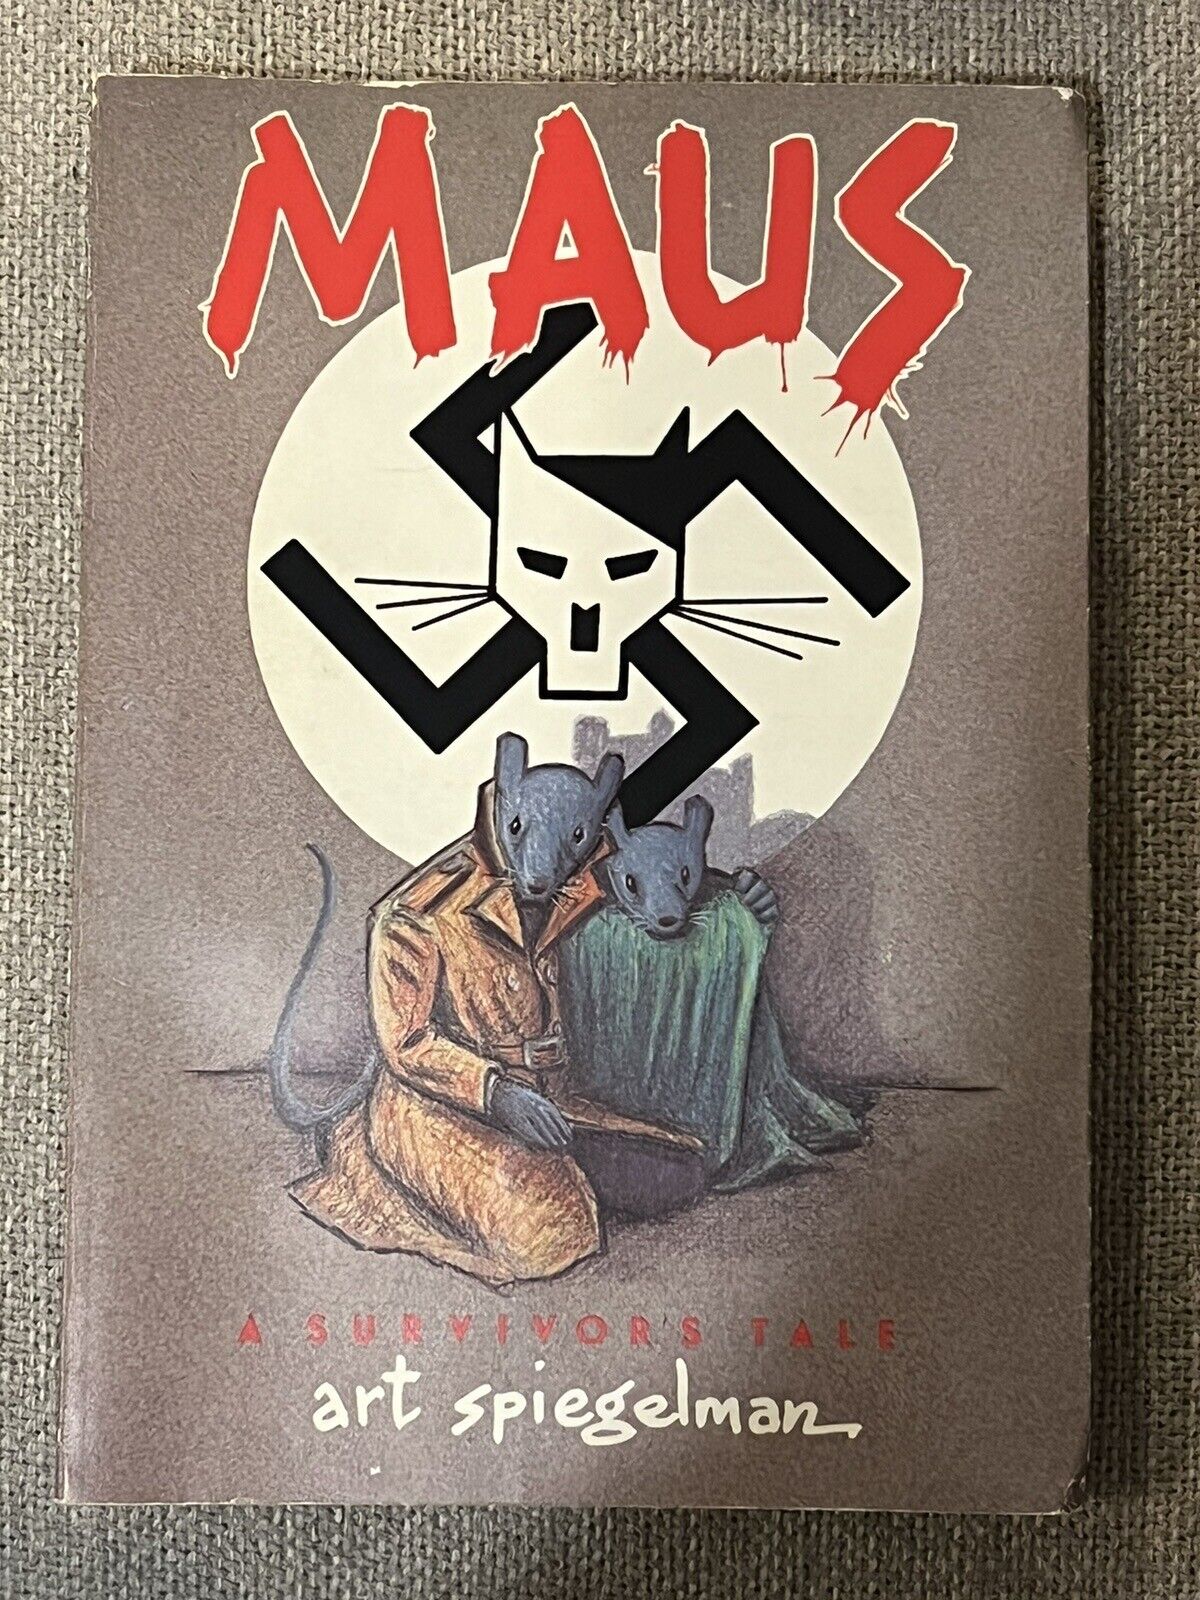 Art Spiegelman - Maus Part I (1986) - 1st edition - Good Condition